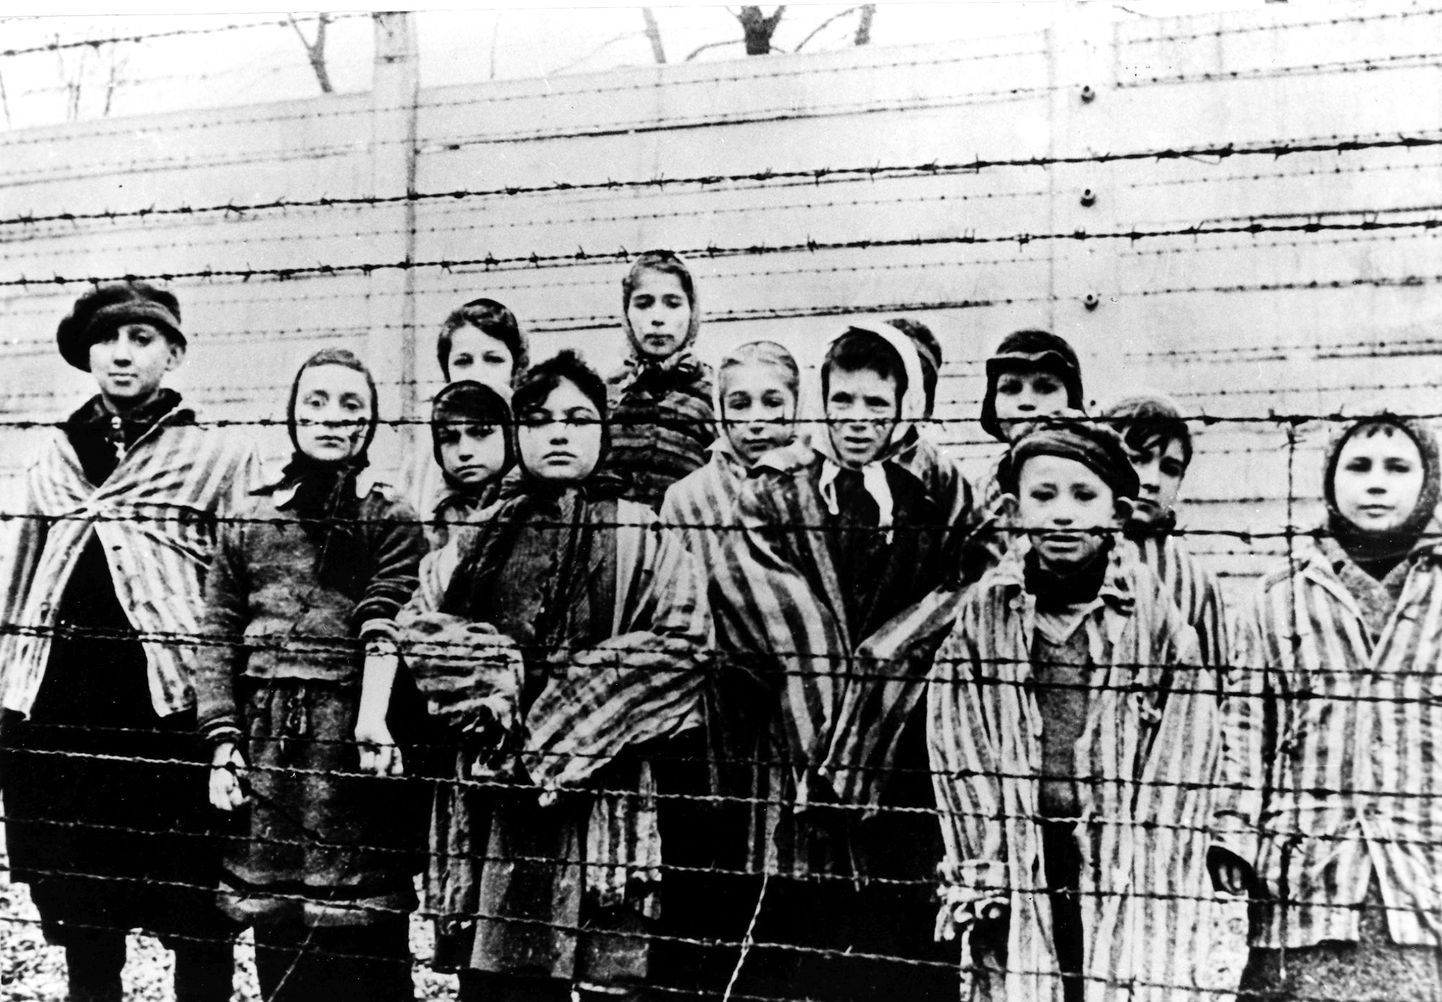 Lapsed, kes jäid ellu Auschwitzi (Oświęcimi) koonduslaagris. Pilt on tehtud jaanuaris 1945.